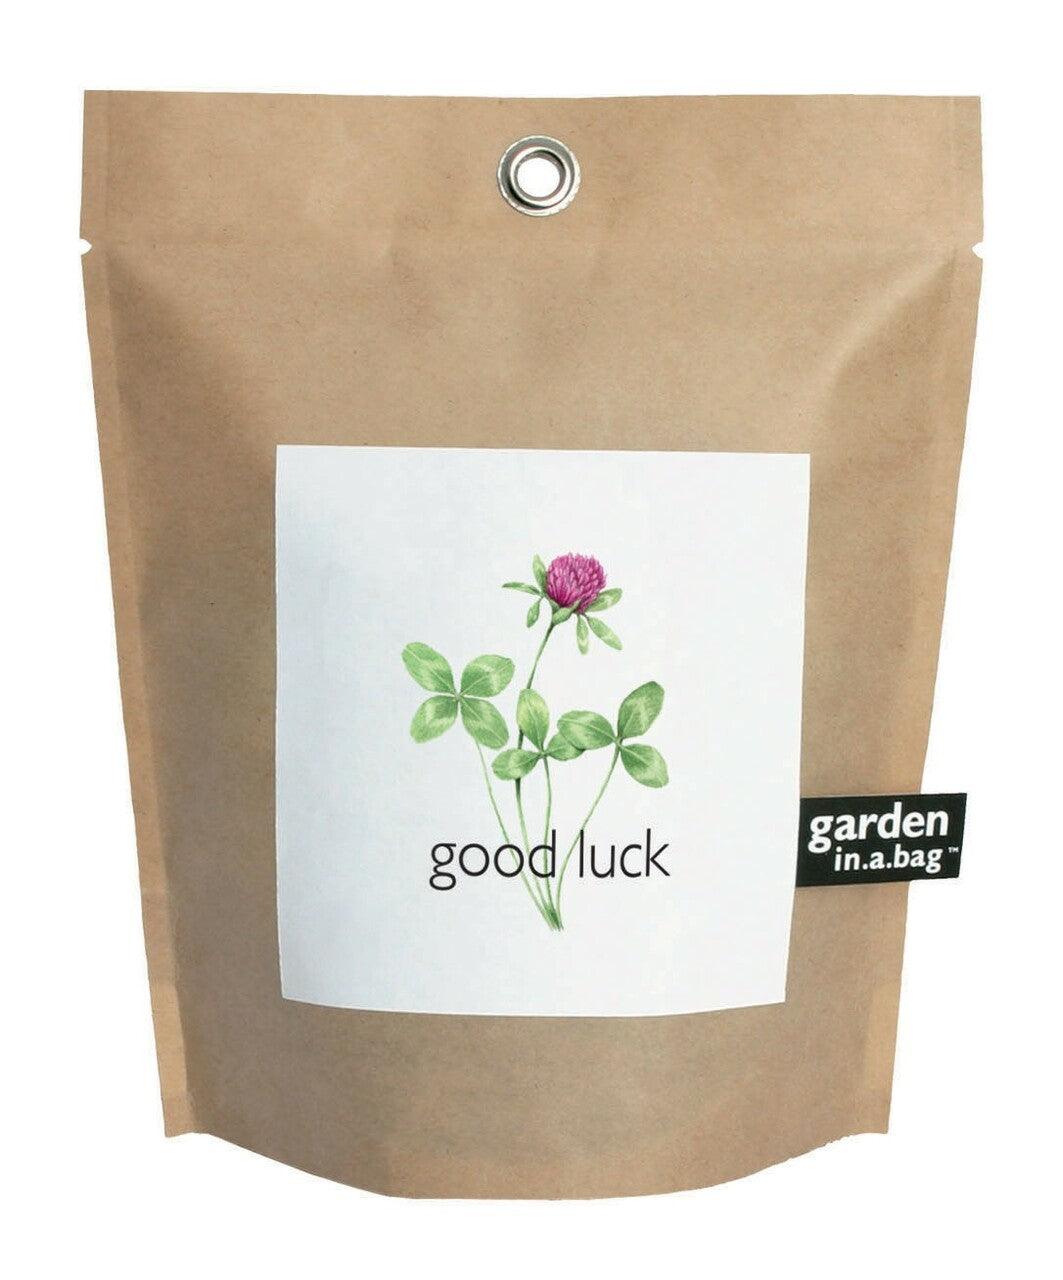 Garden-in-a-bag Good Luck Clover - Casey & Company